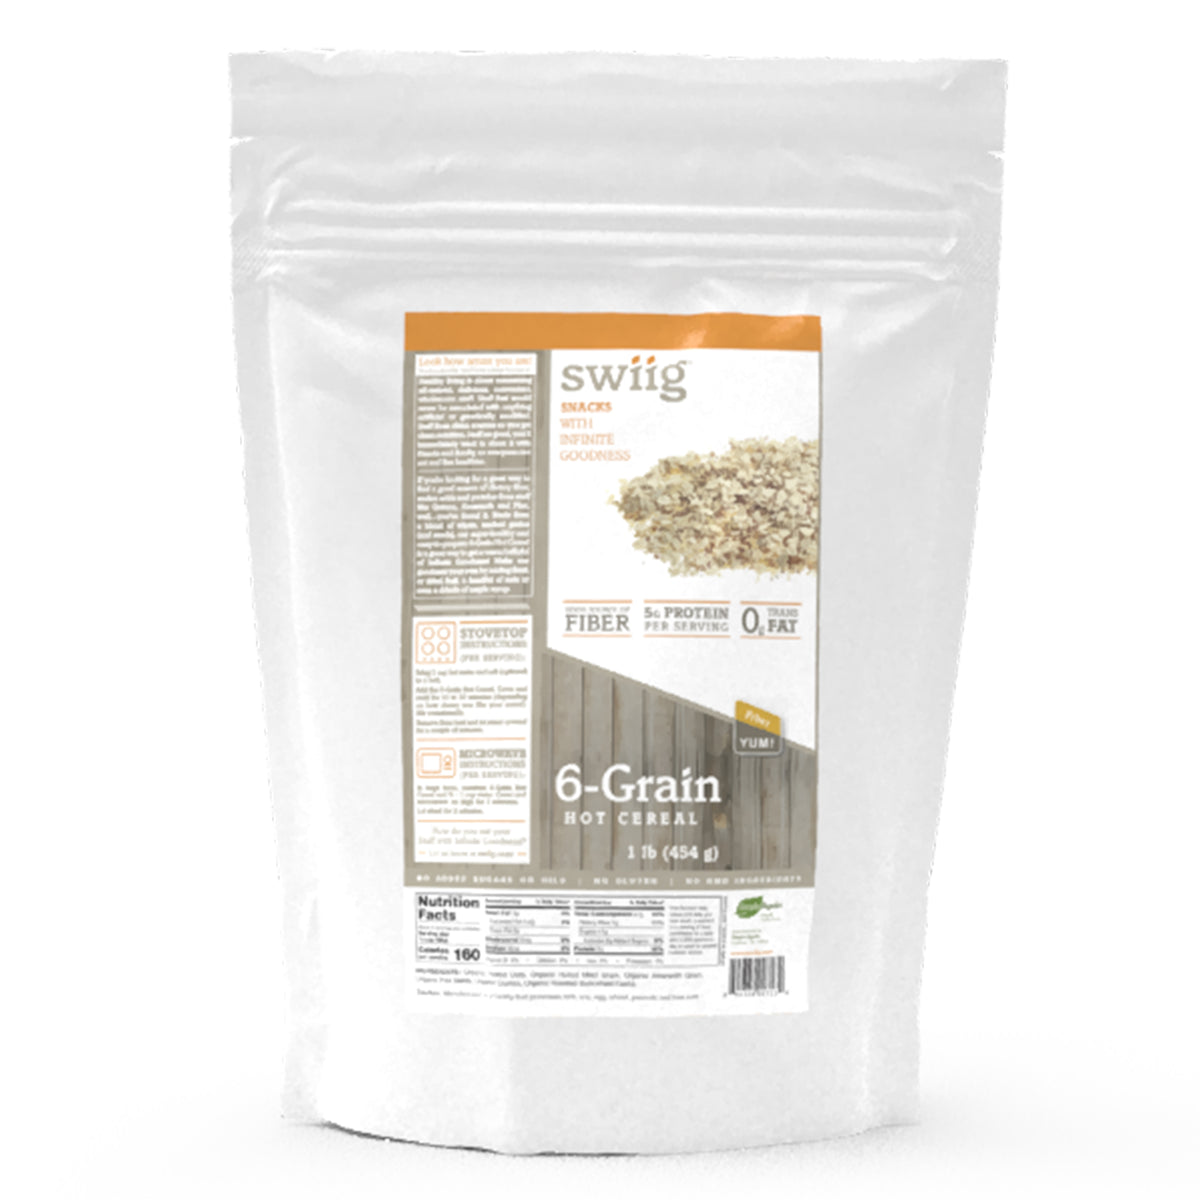 6 - Grain Hot Cereal (Kit) - PFC Swiig